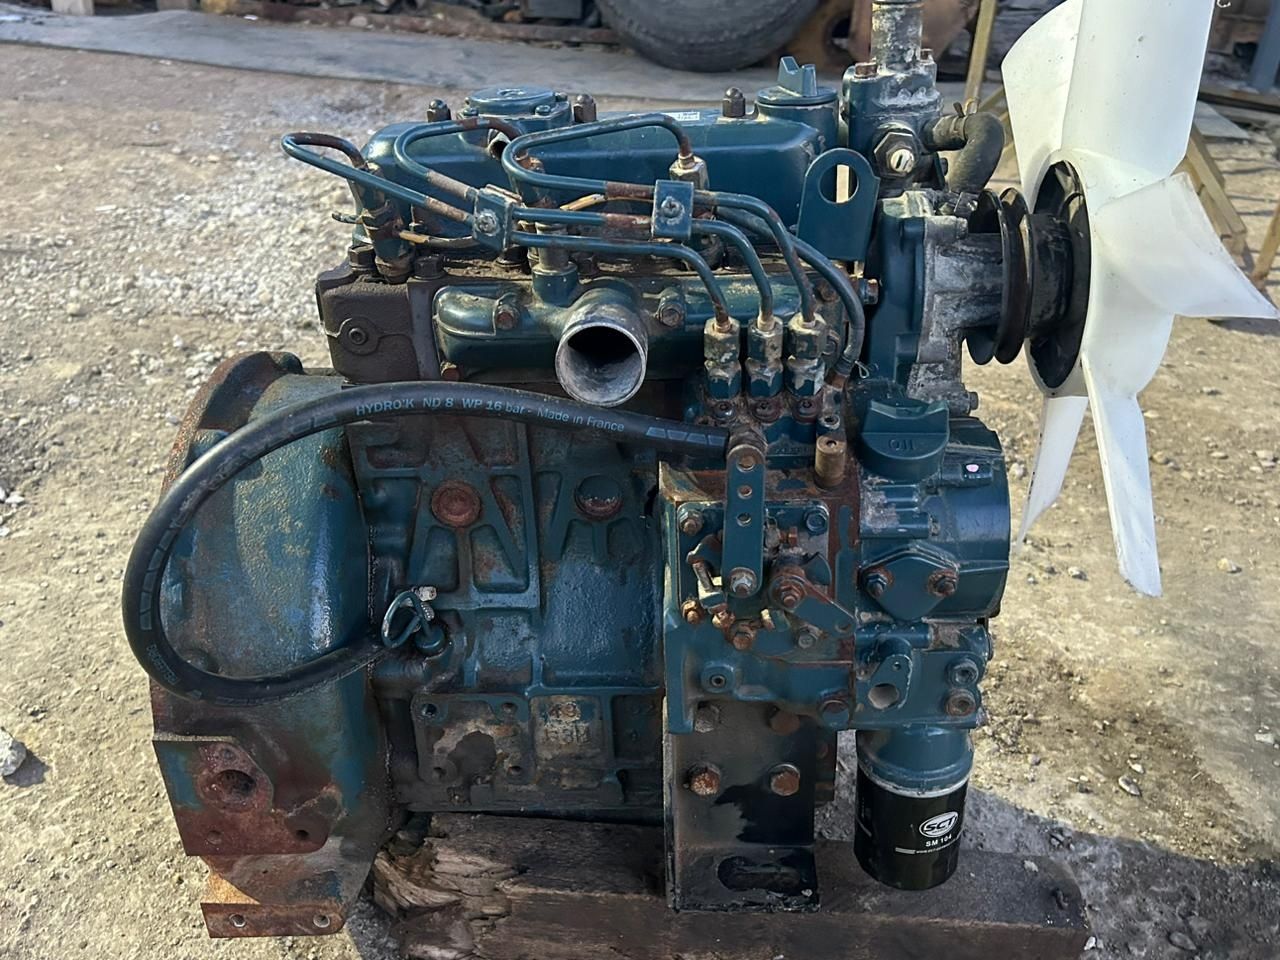 Двигатель Kubota D1105